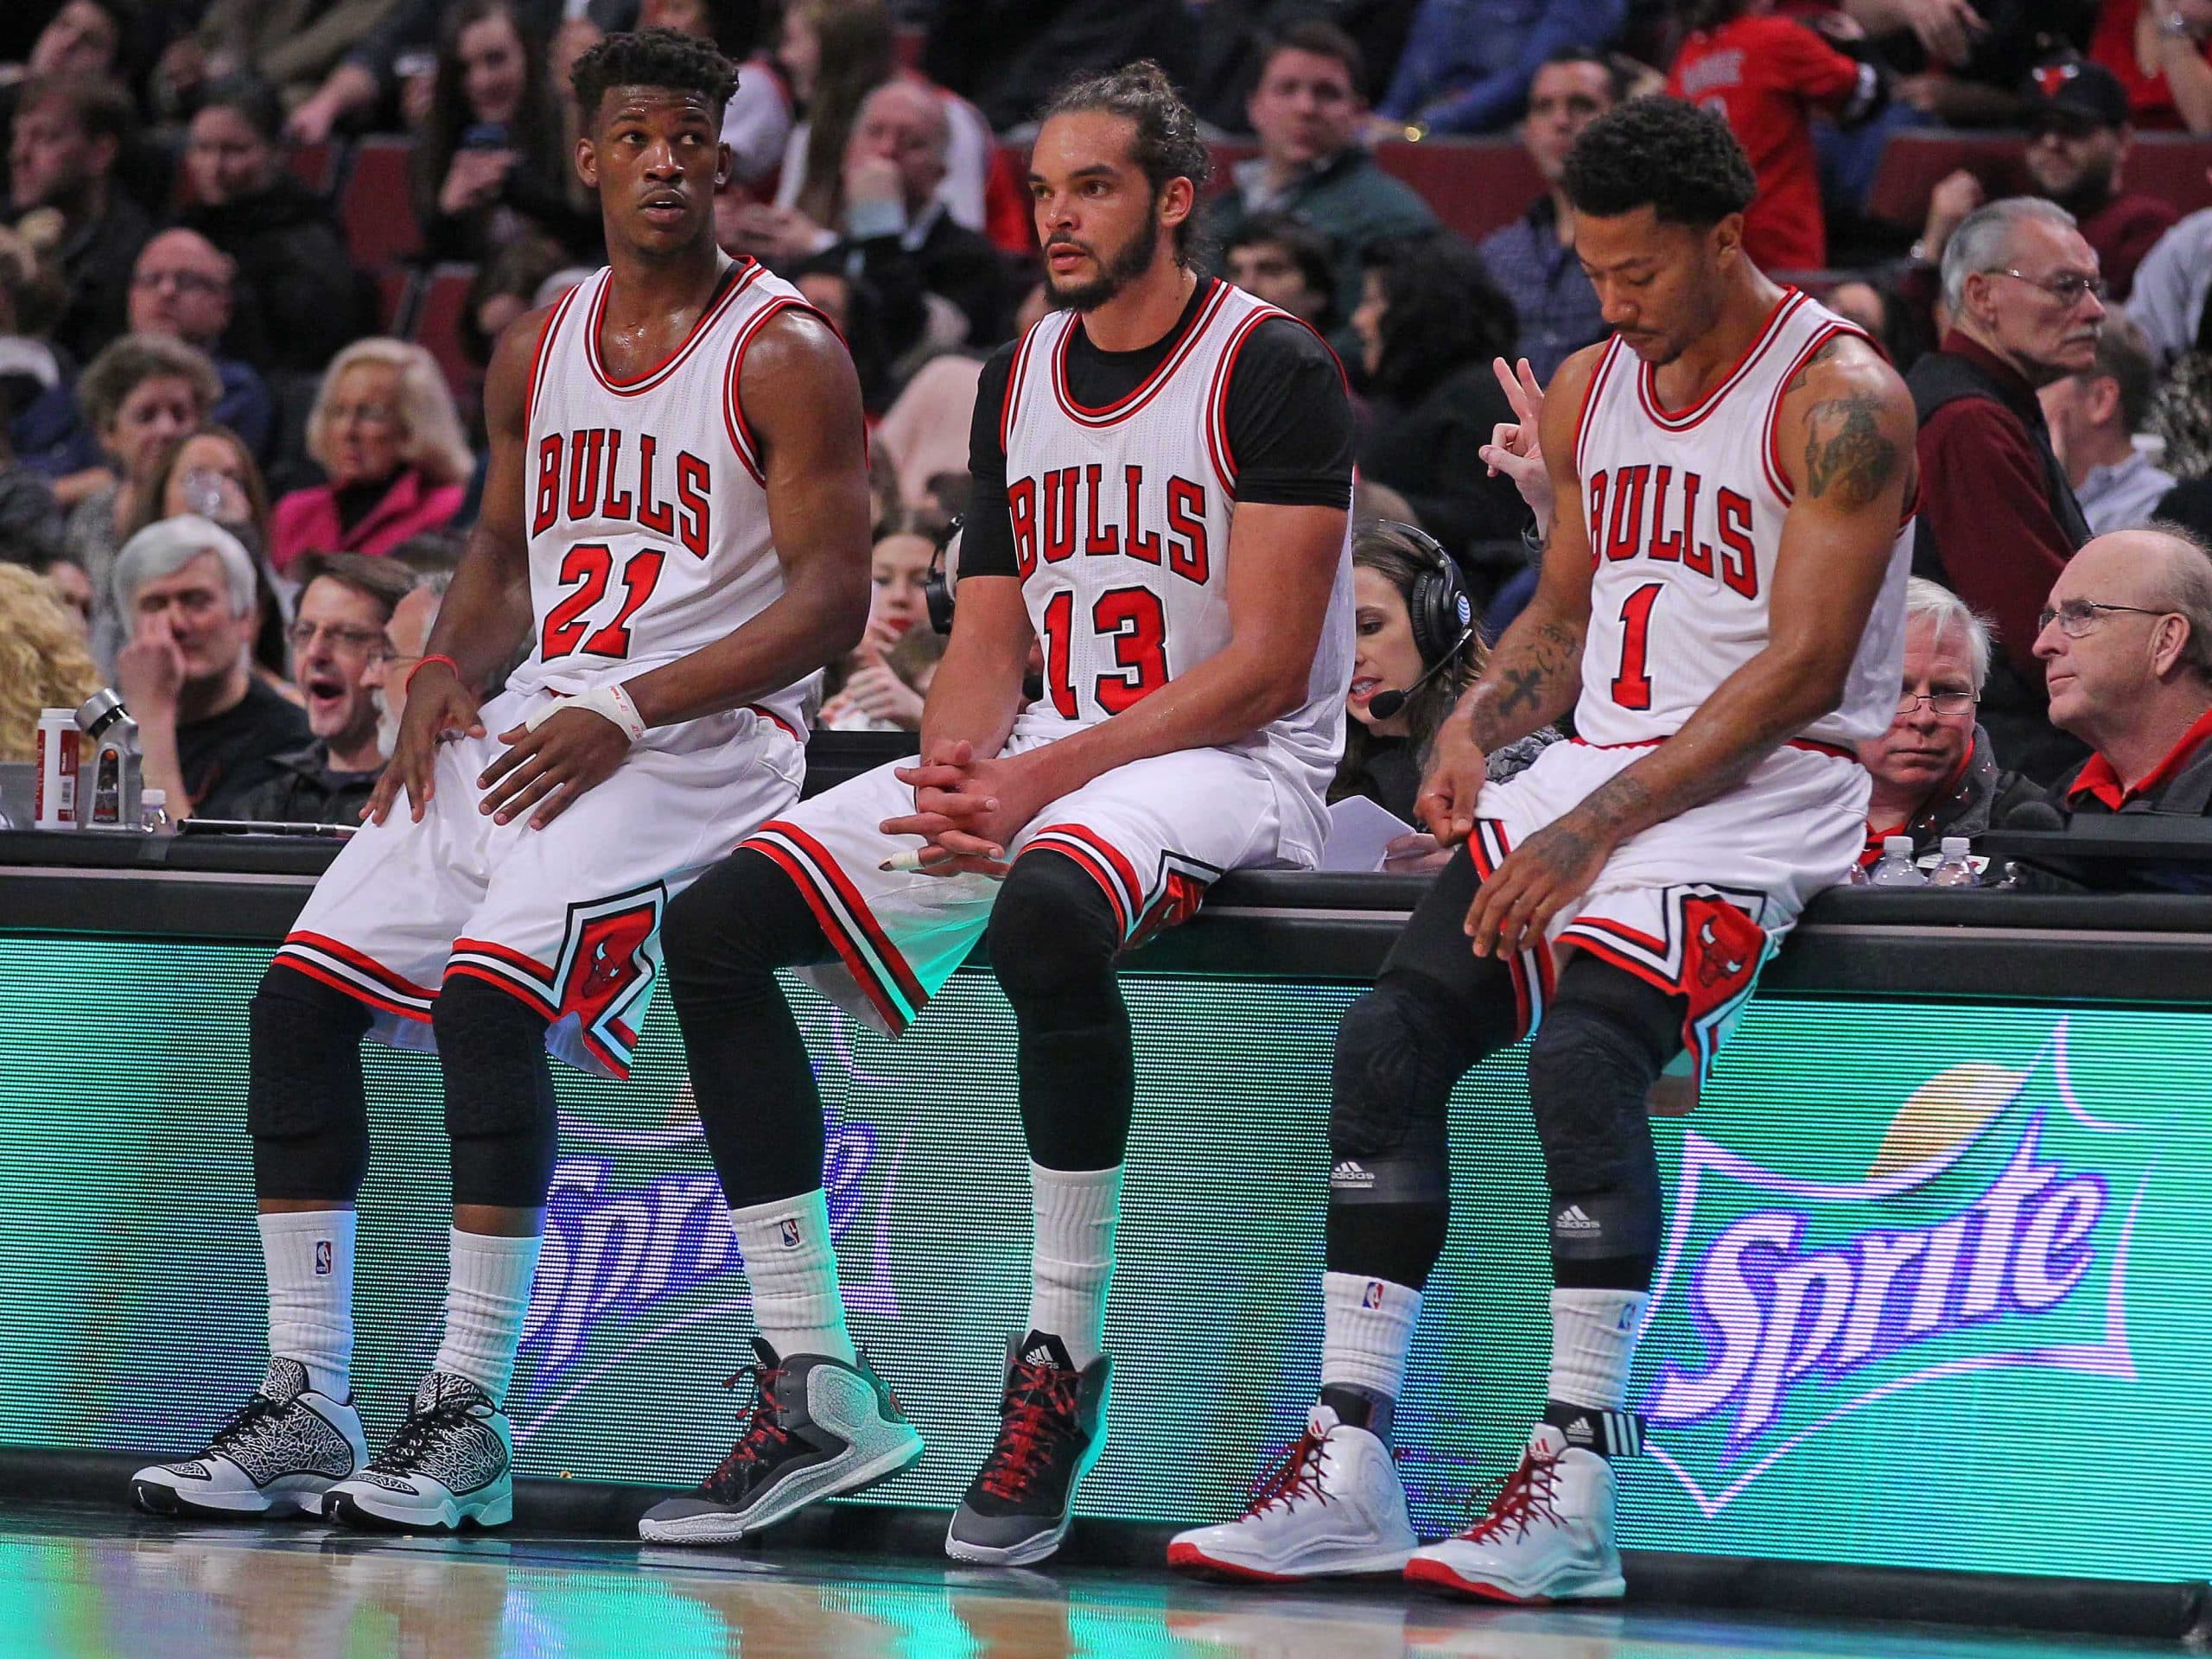 VN Design - Should Chicago Bulls retire Derrick Rose's